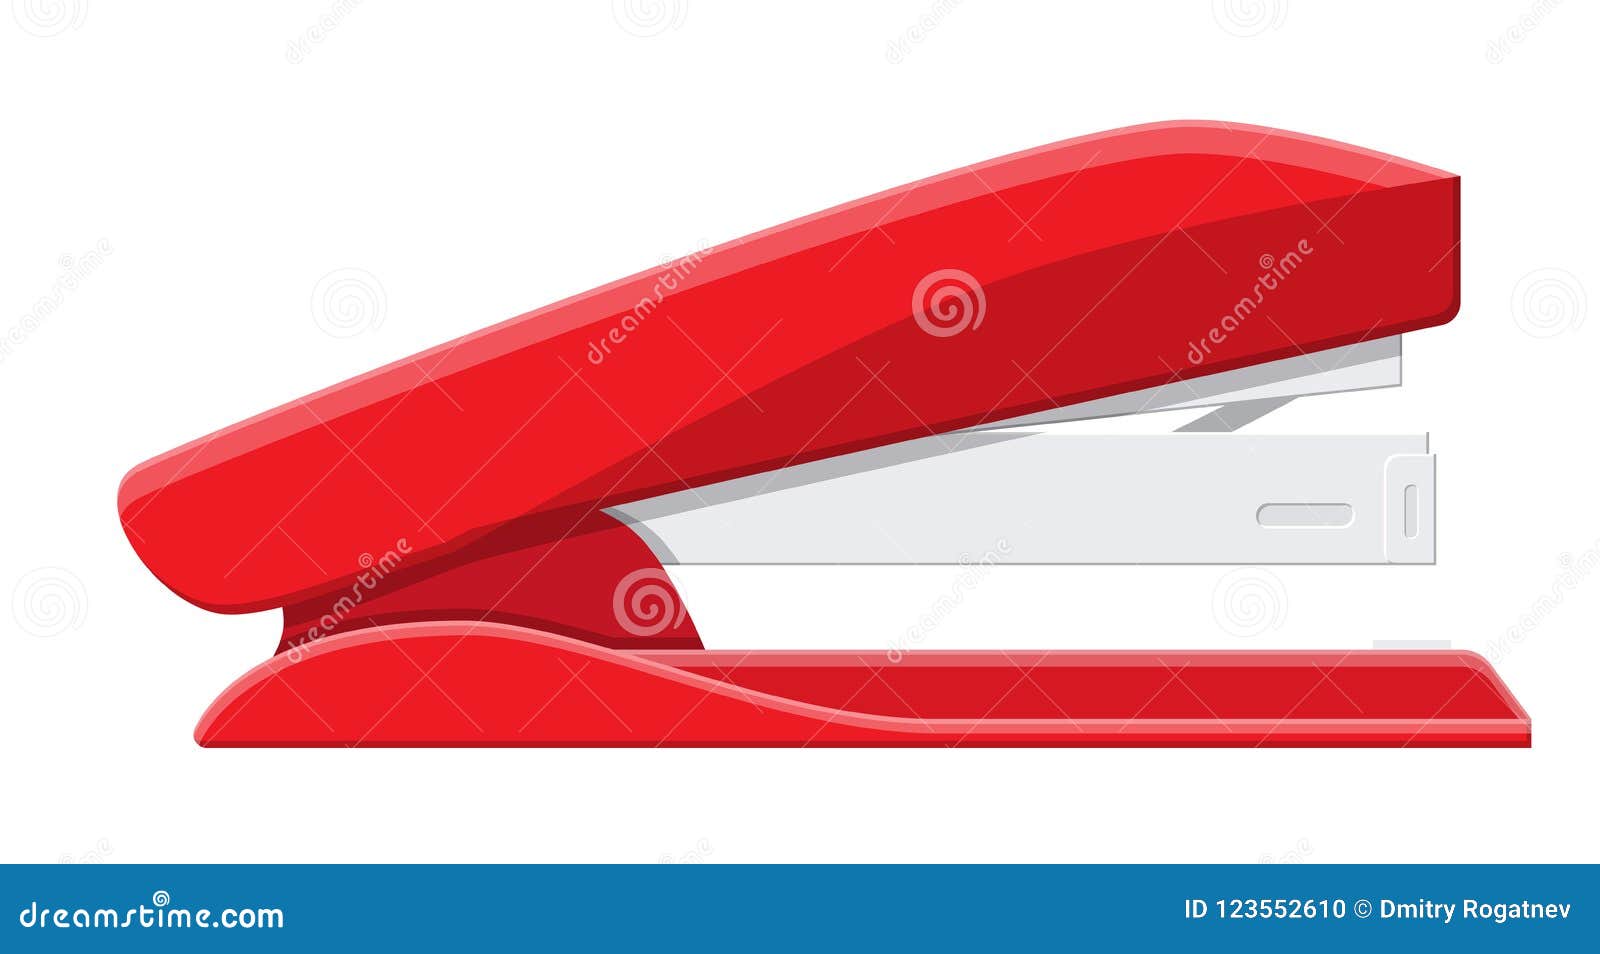 red plastic stapler.